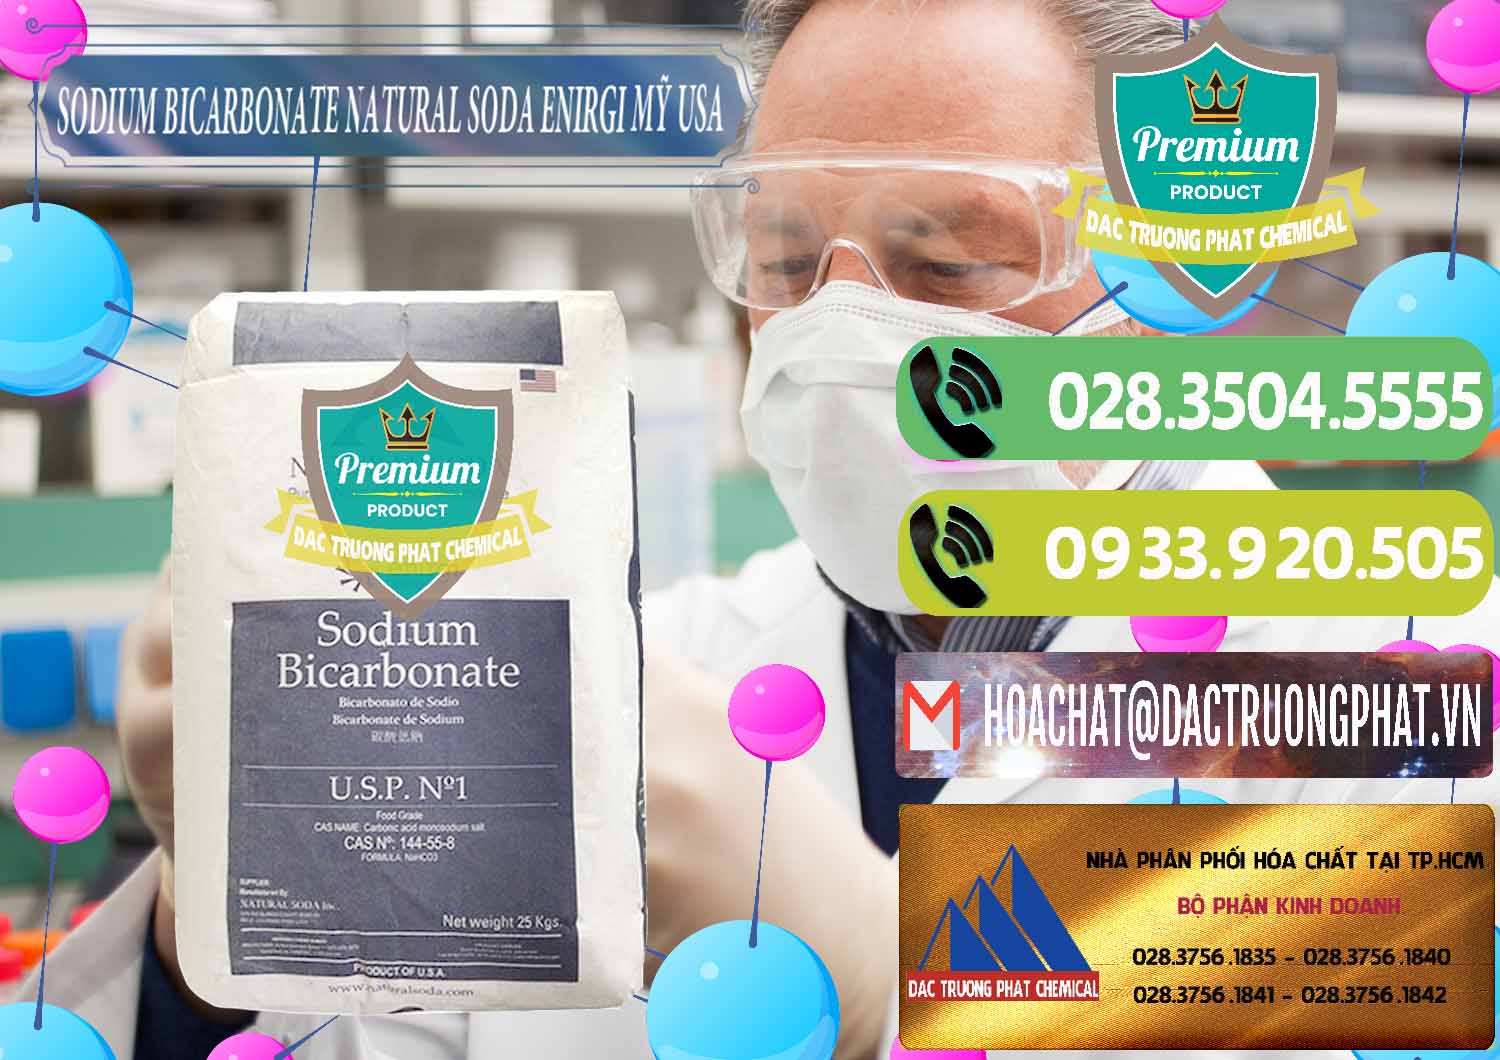 Chuyên nhập khẩu và bán Sodium Bicarbonate – Bicar NaHCO3 Food Grade Natural Soda Enirgi Mỹ USA - 0257 - Phân phối hóa chất tại TP.HCM - hoachatmientay.vn